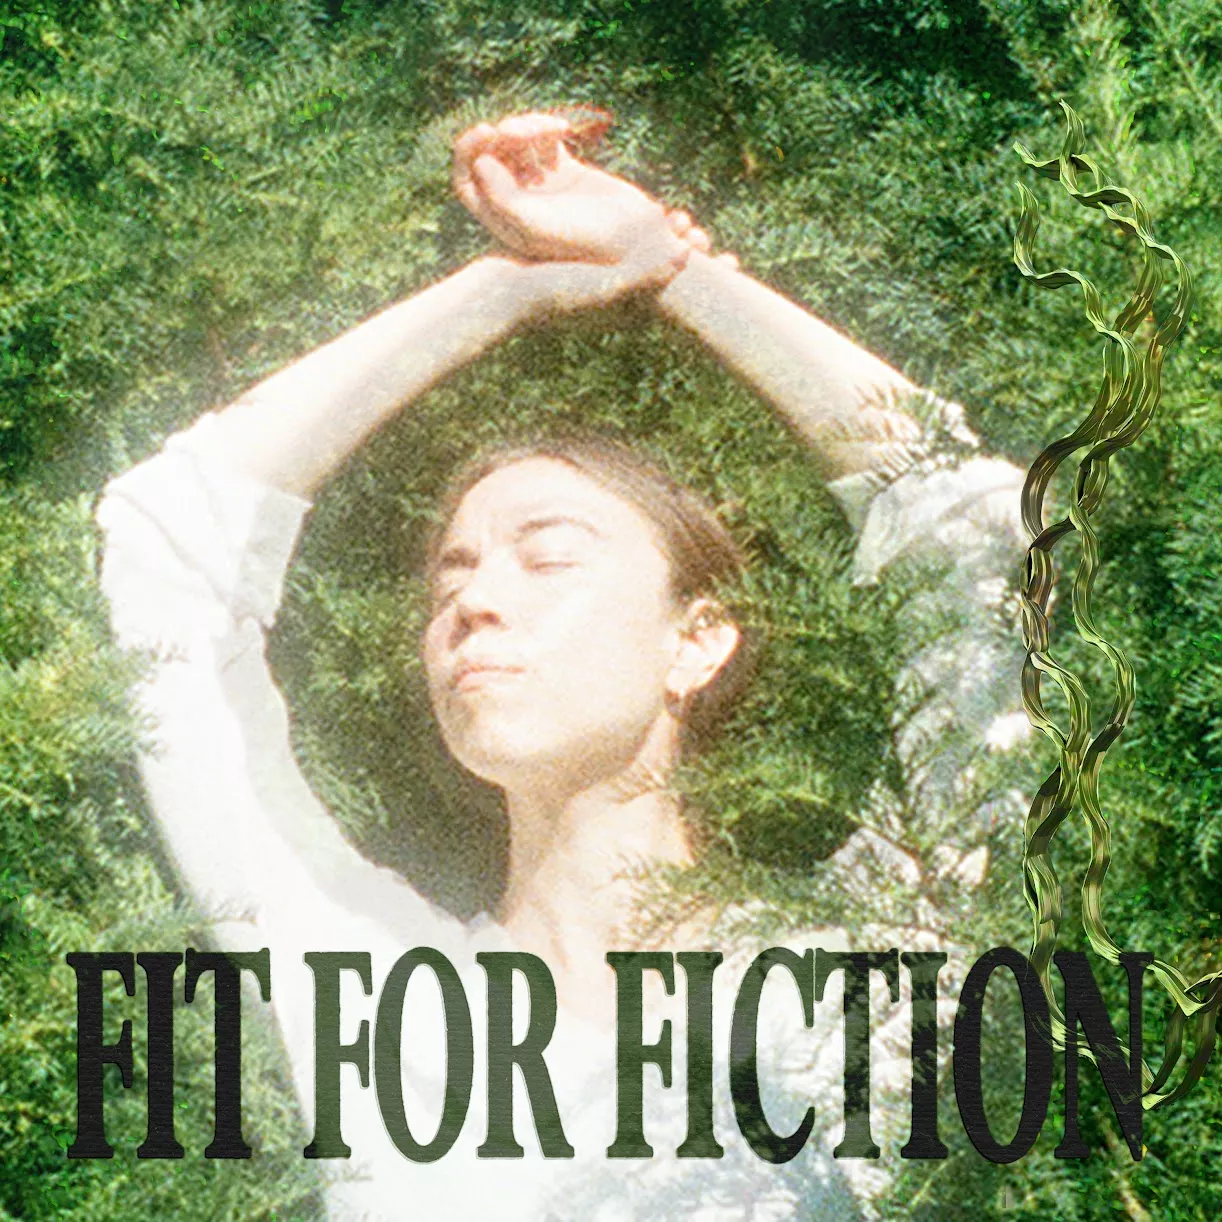 Fit For Fiction - Excelsior